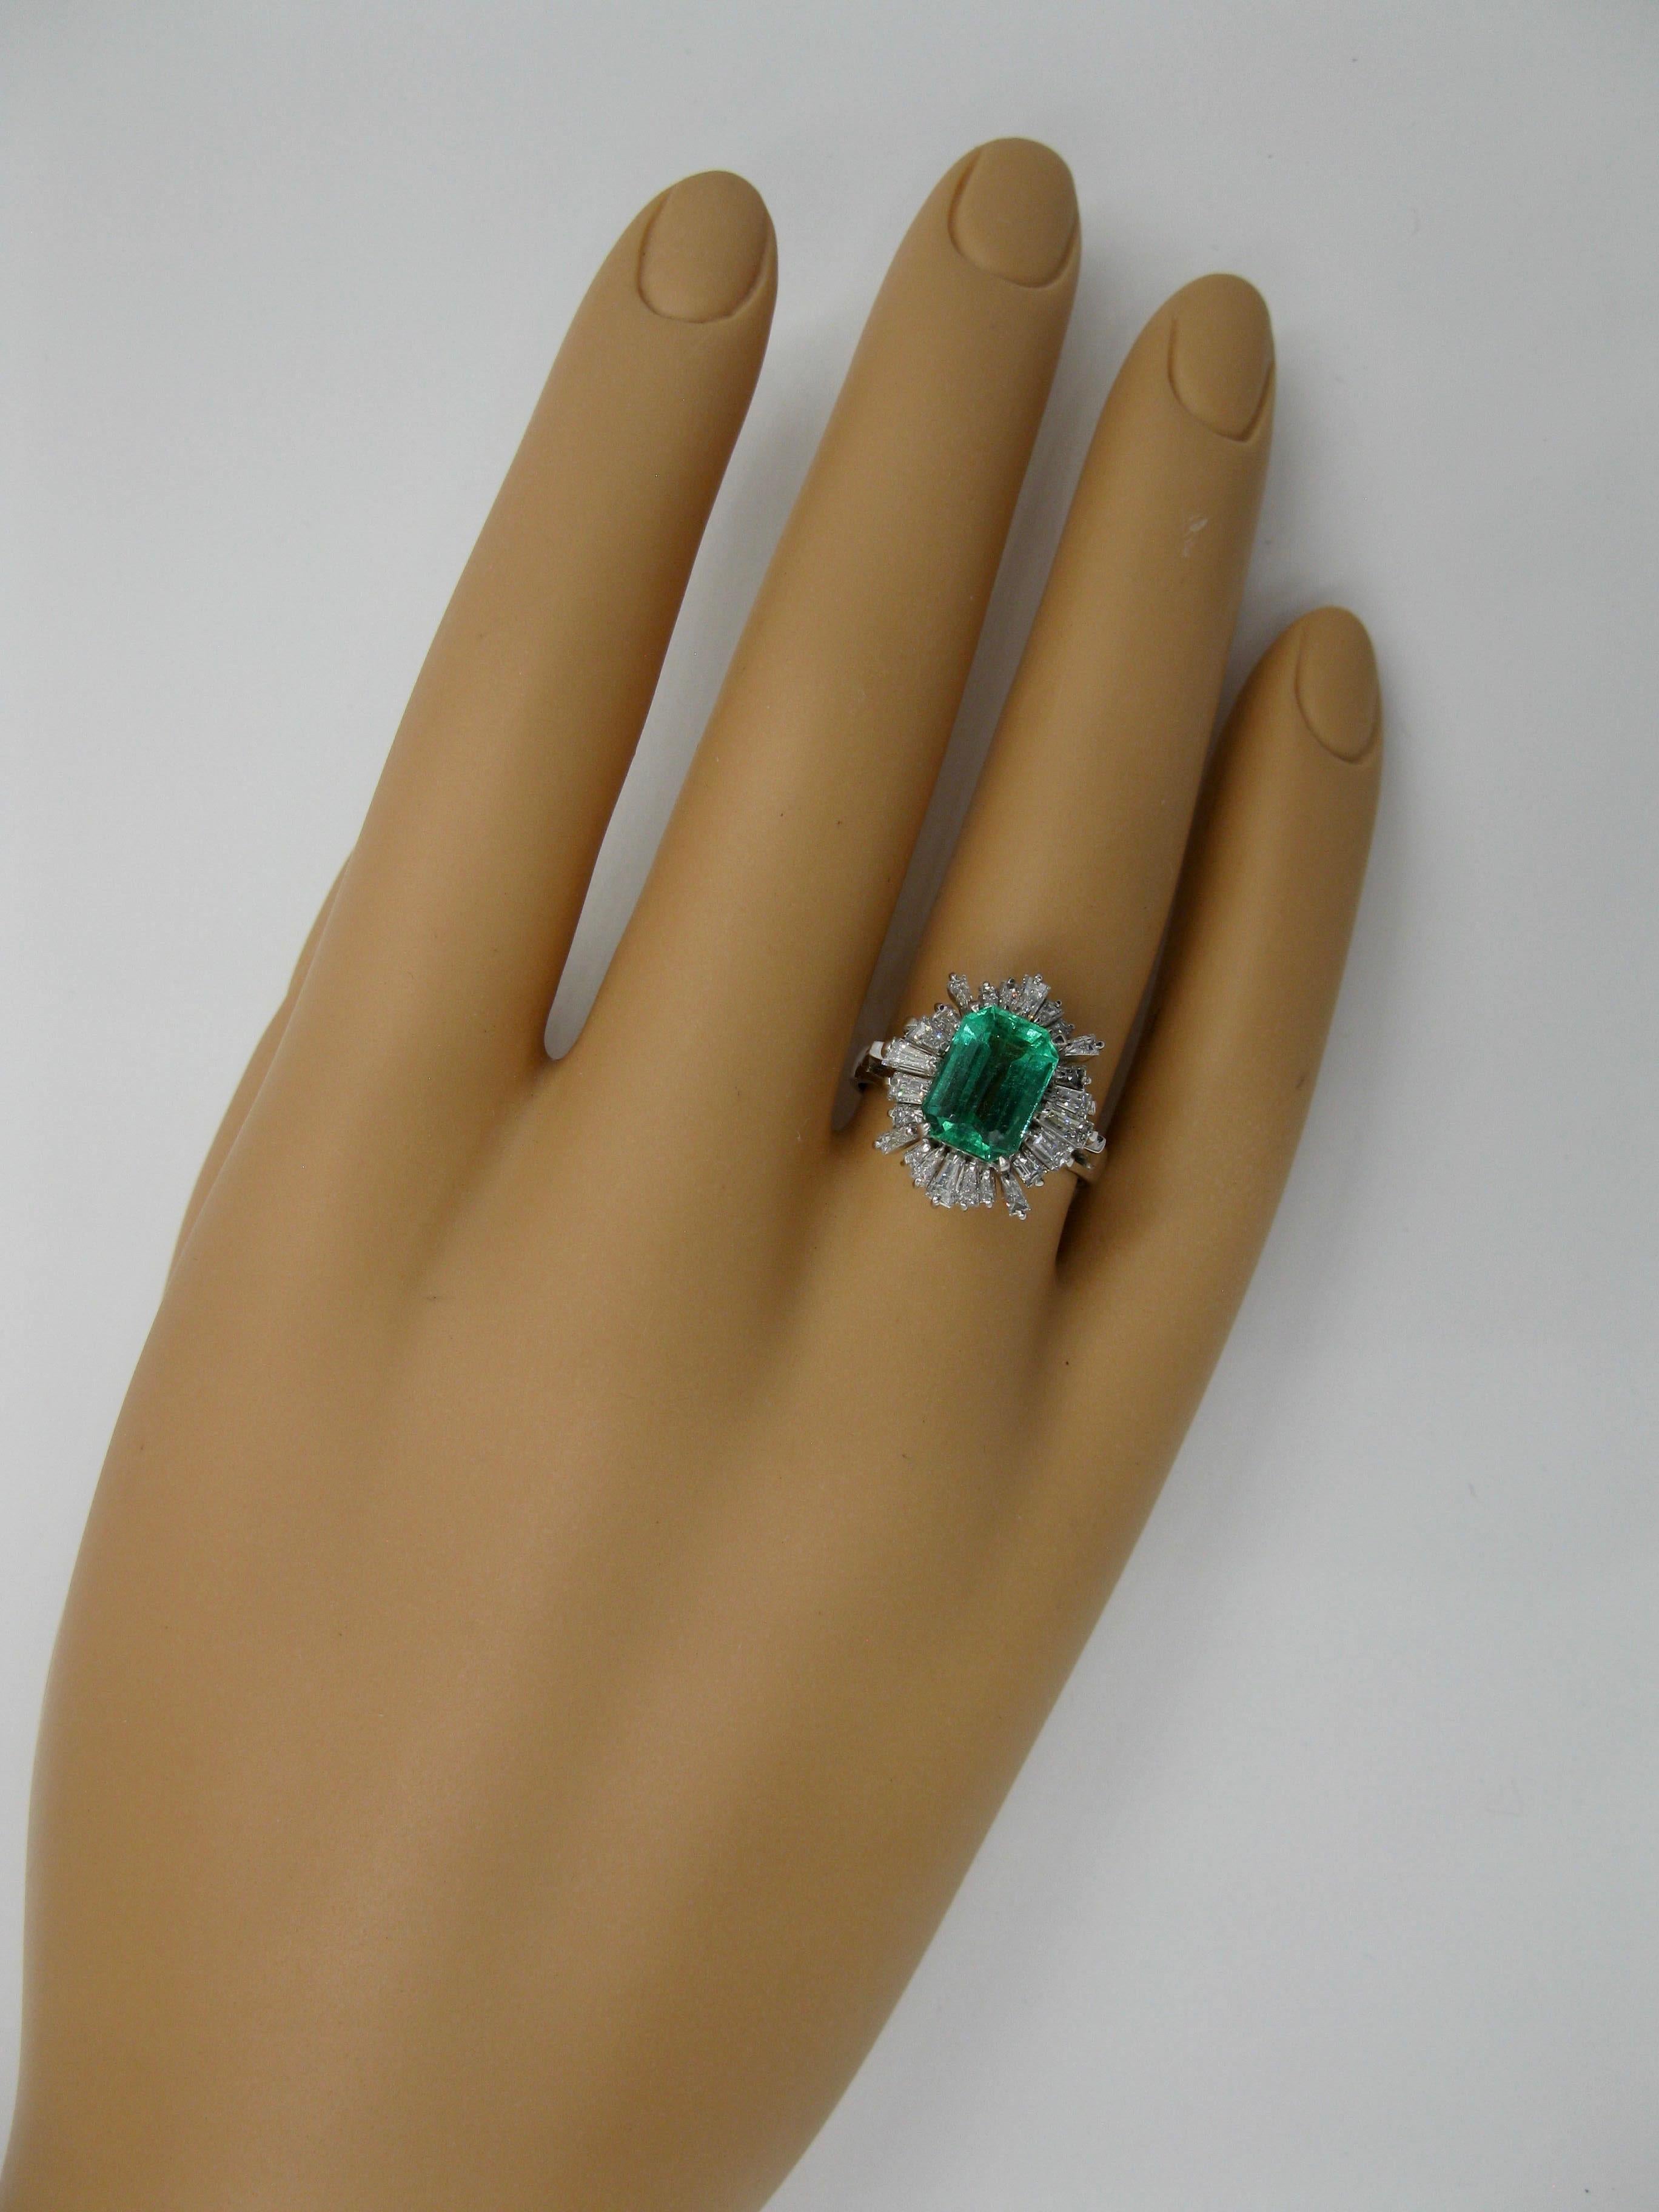 2.1 carat emerald cut diamond